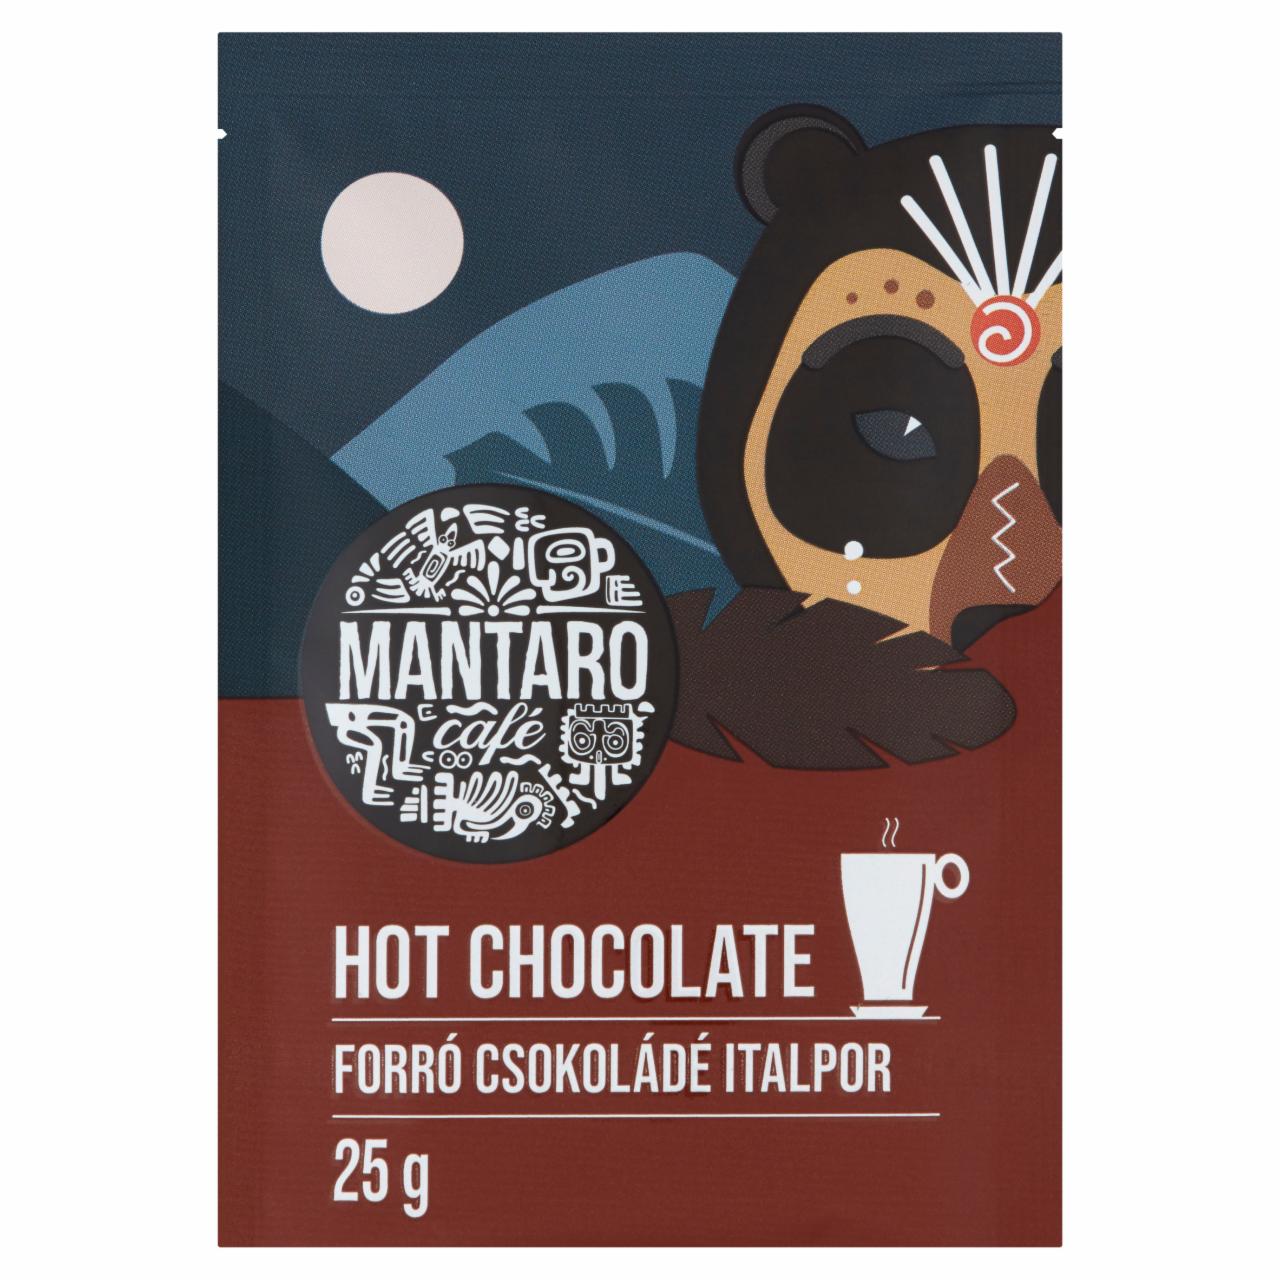 Képek - Mantaro Café Hot Chocolate forró csokoládé italpor 25 g